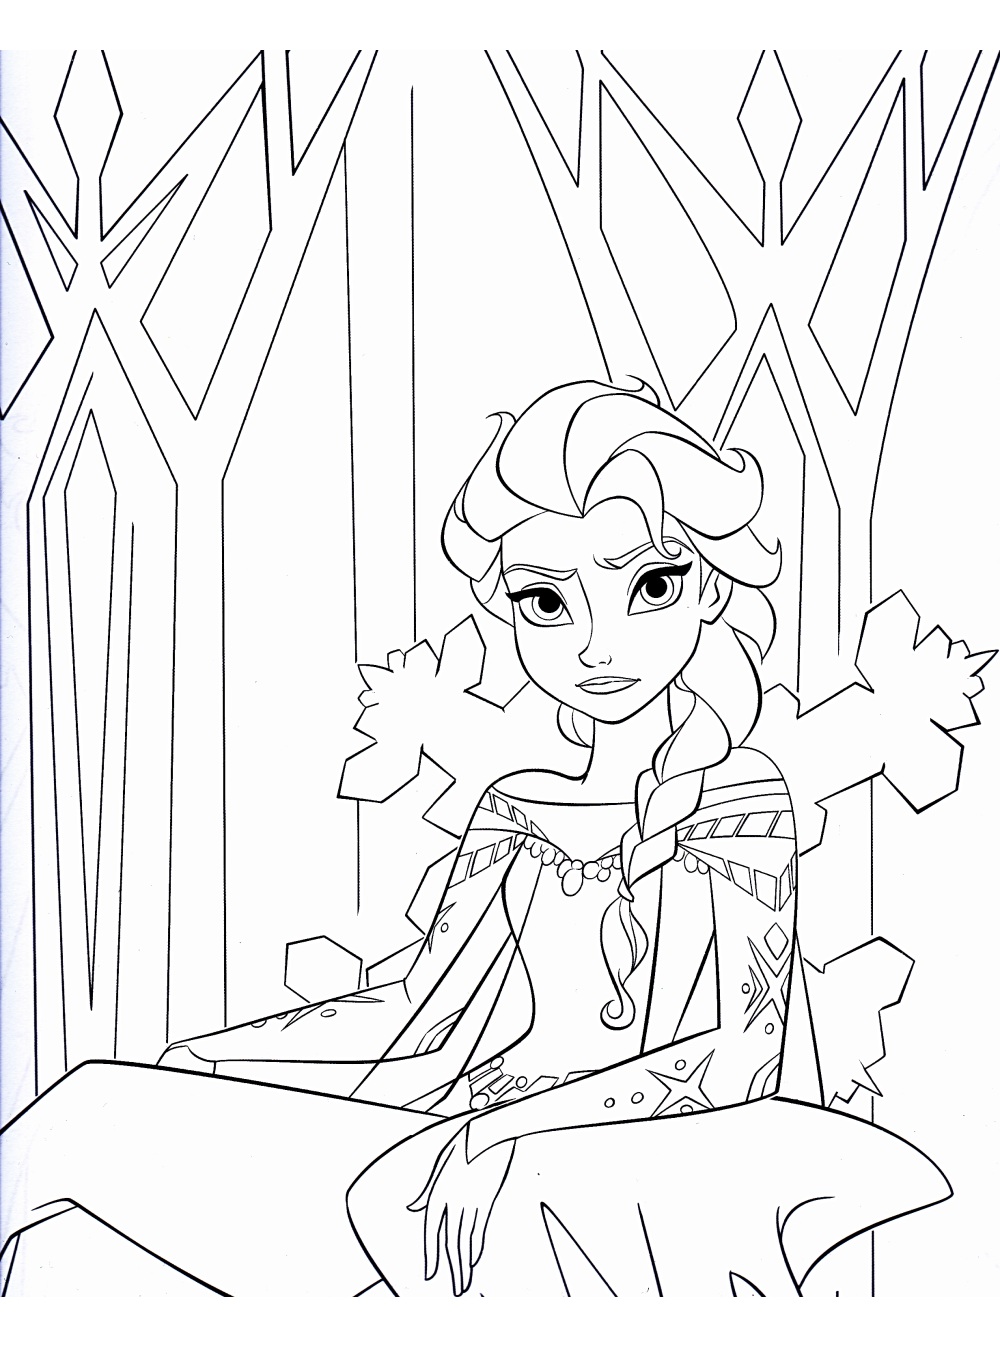 La princesse de La Reine Elsa des neiges sur son trône glacial